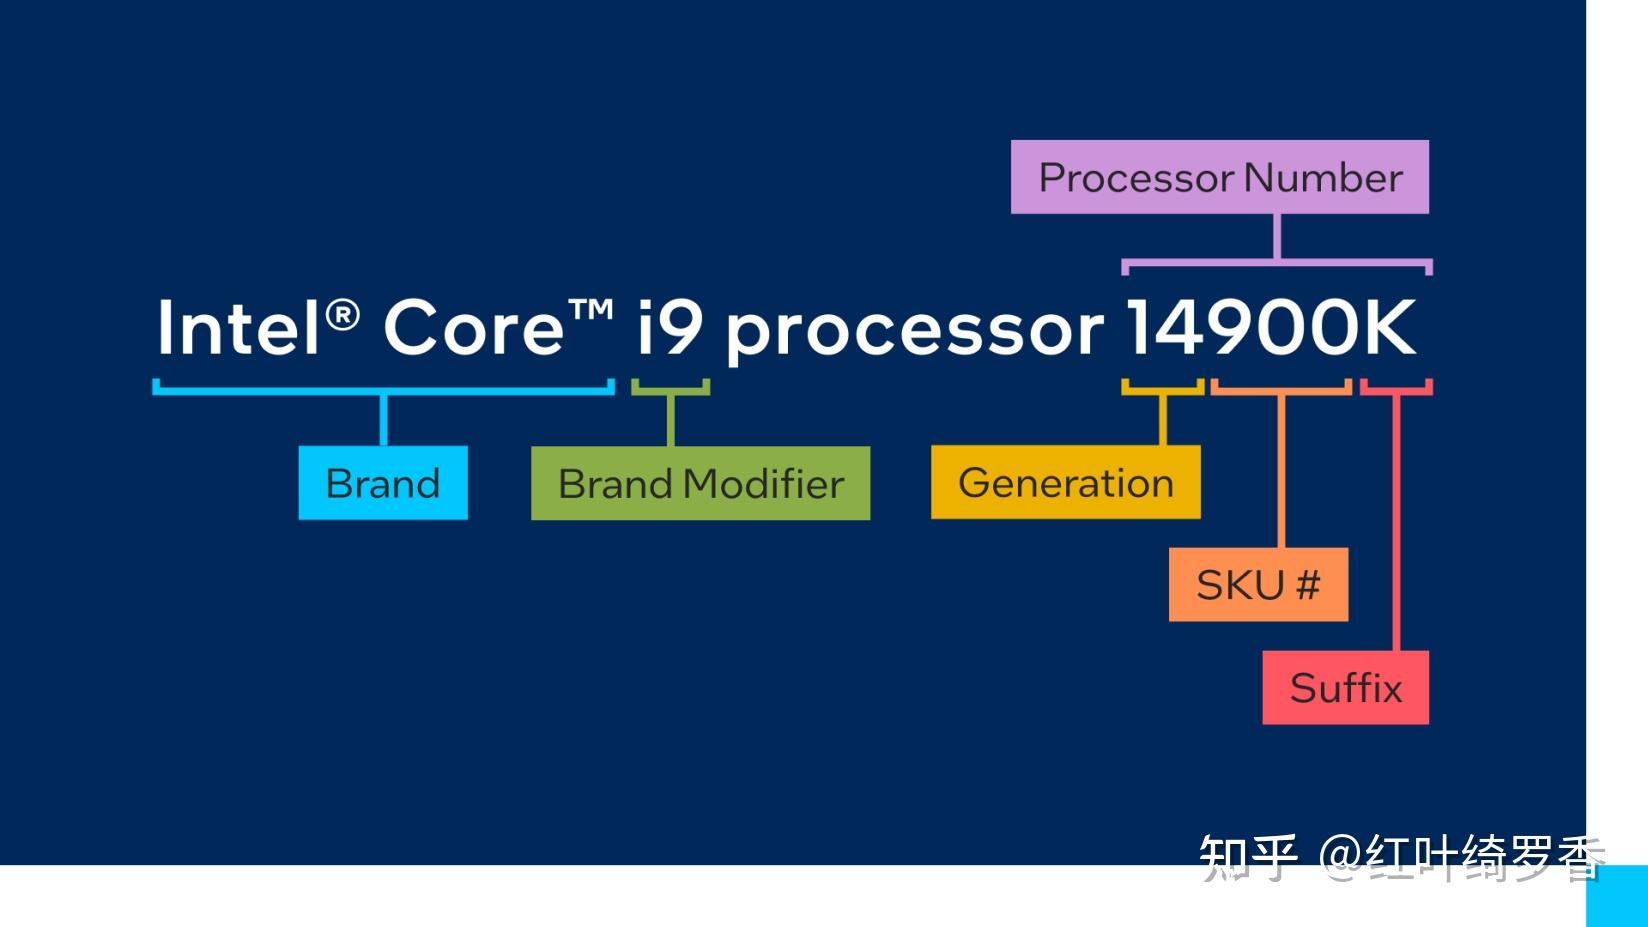 i5-4590 深入了解英特尔酷睿i5-4590处理器：性能、规格和适用环境详解  第6张